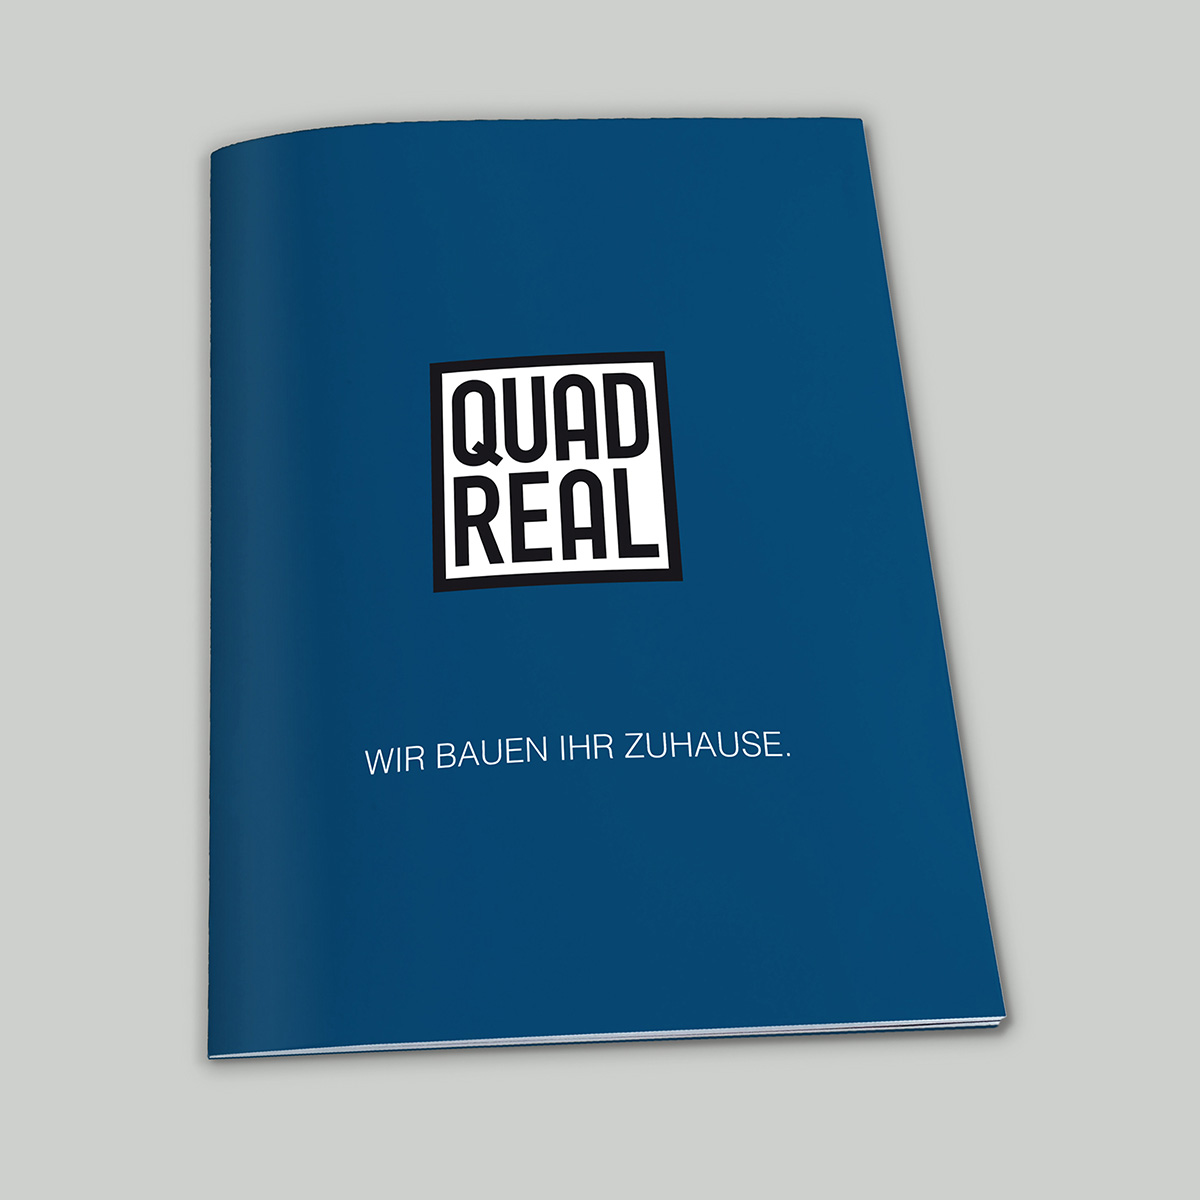 Quadreal Immobilien – Branding